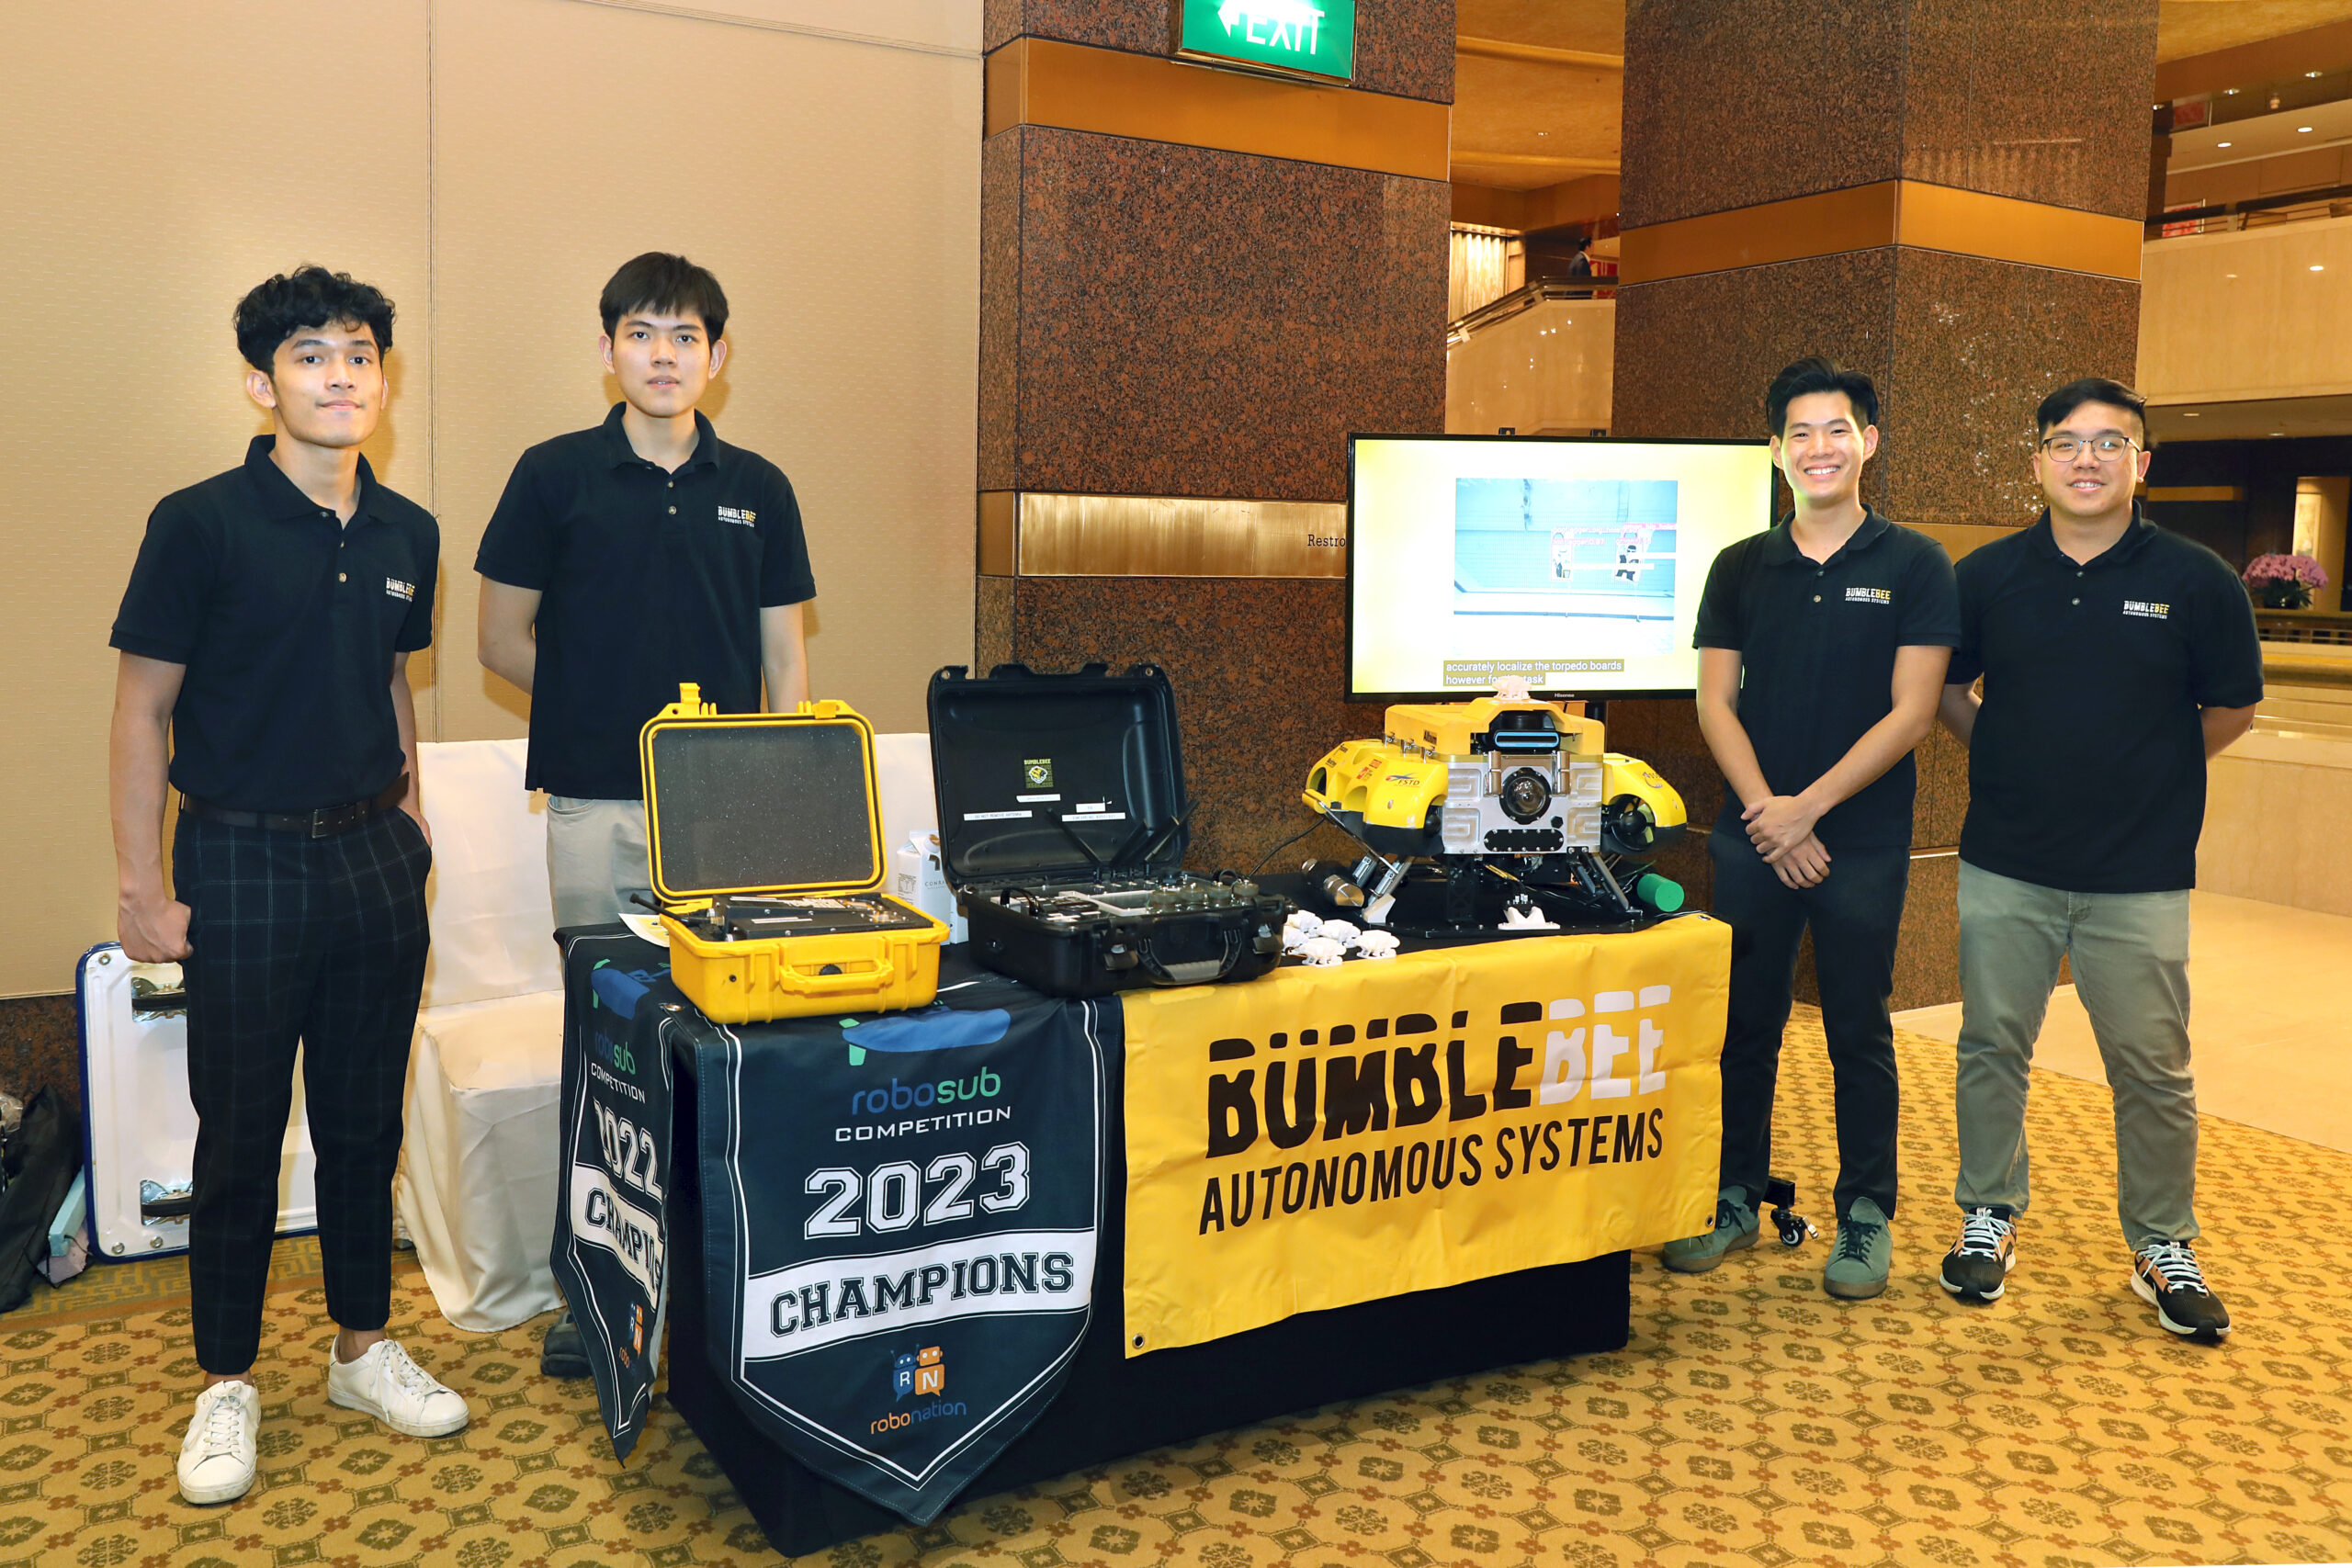 Bumblebee Students (from left): Mr Patrick Joy Surbakti, Mr Tran Phuoc Huy Khang, Mr Ng Cheng Yang Titus, Mr Lee Shi-An Matthew